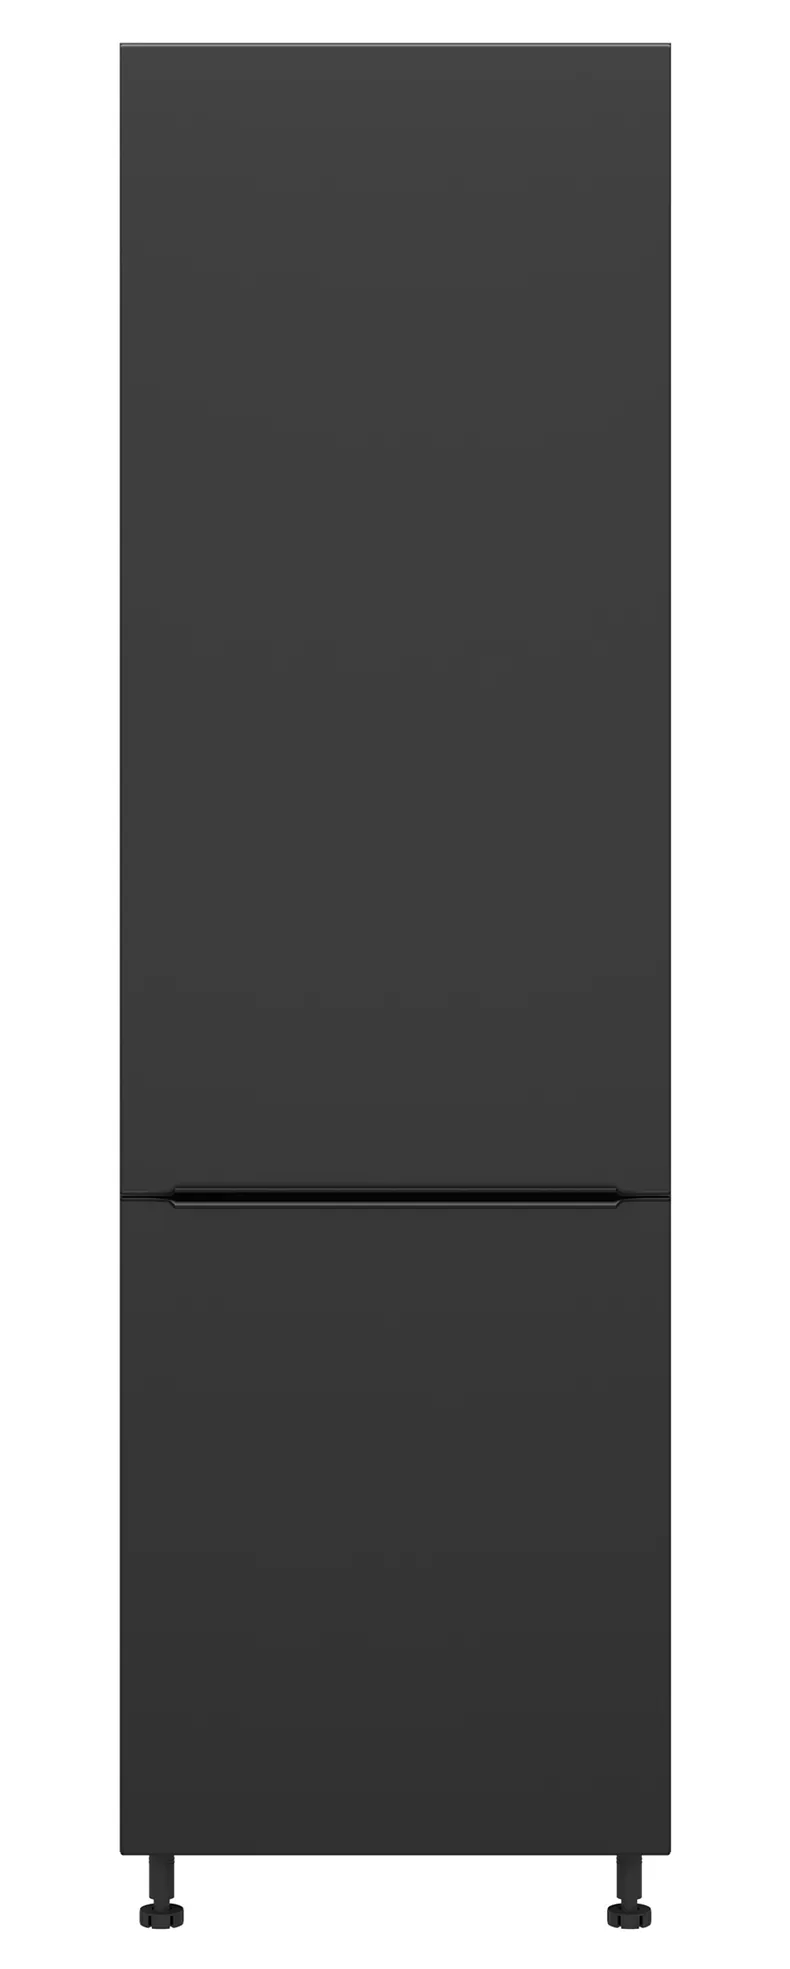 BRW Левый кухонный шкаф Sole L6 высотой 60 см черный матовый, черный/черный матовый FM_D_60/207_L/L-CA/CAM фото №1